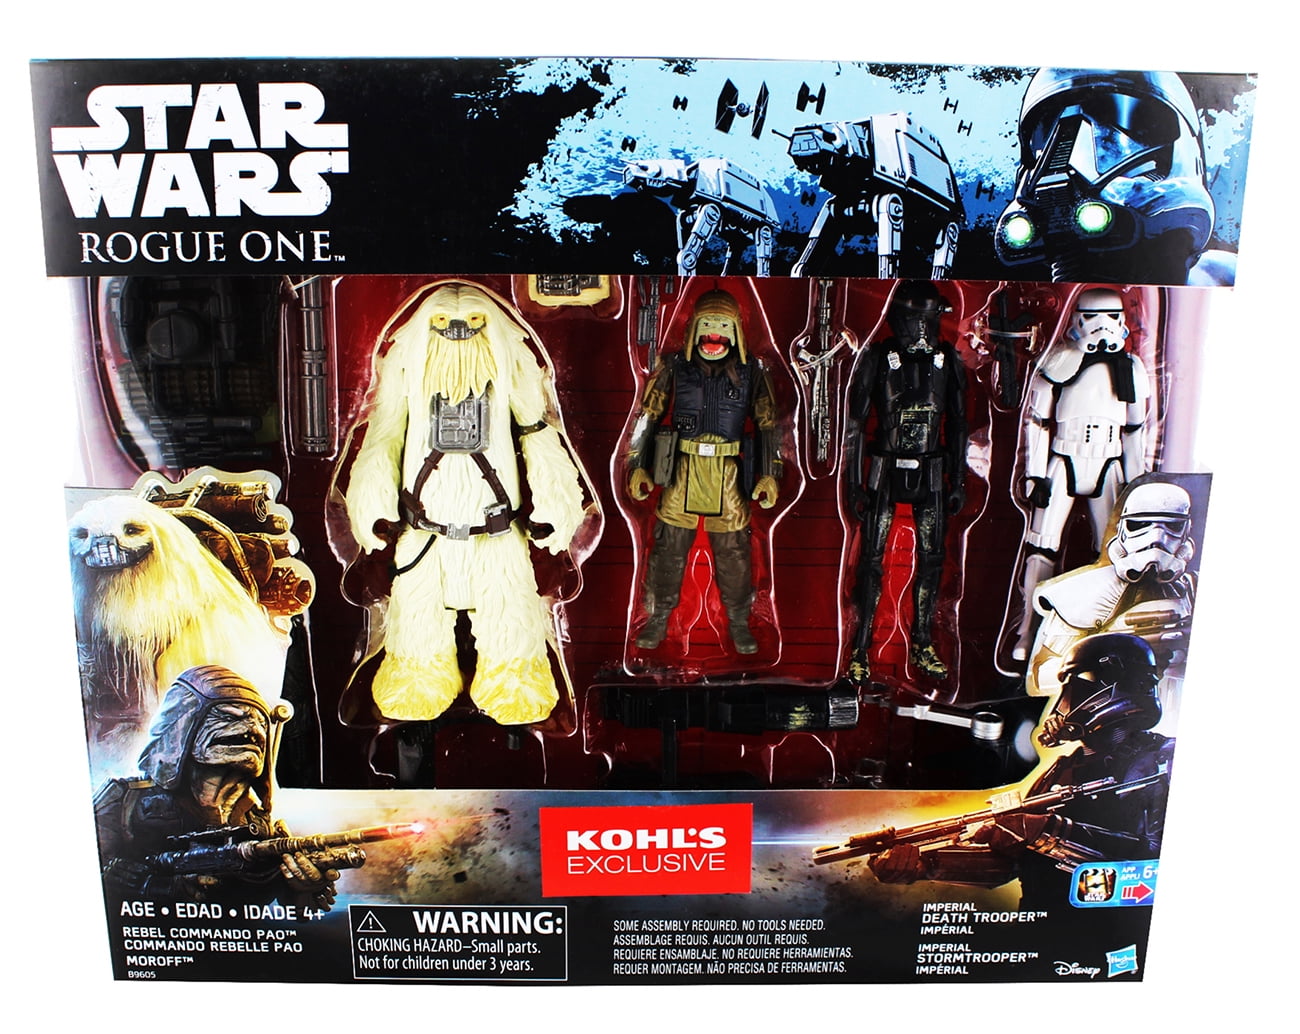 Kohls loose 3.75" FIGURE de premier ordre Stormtrooper Officer Star Wars Force Link 